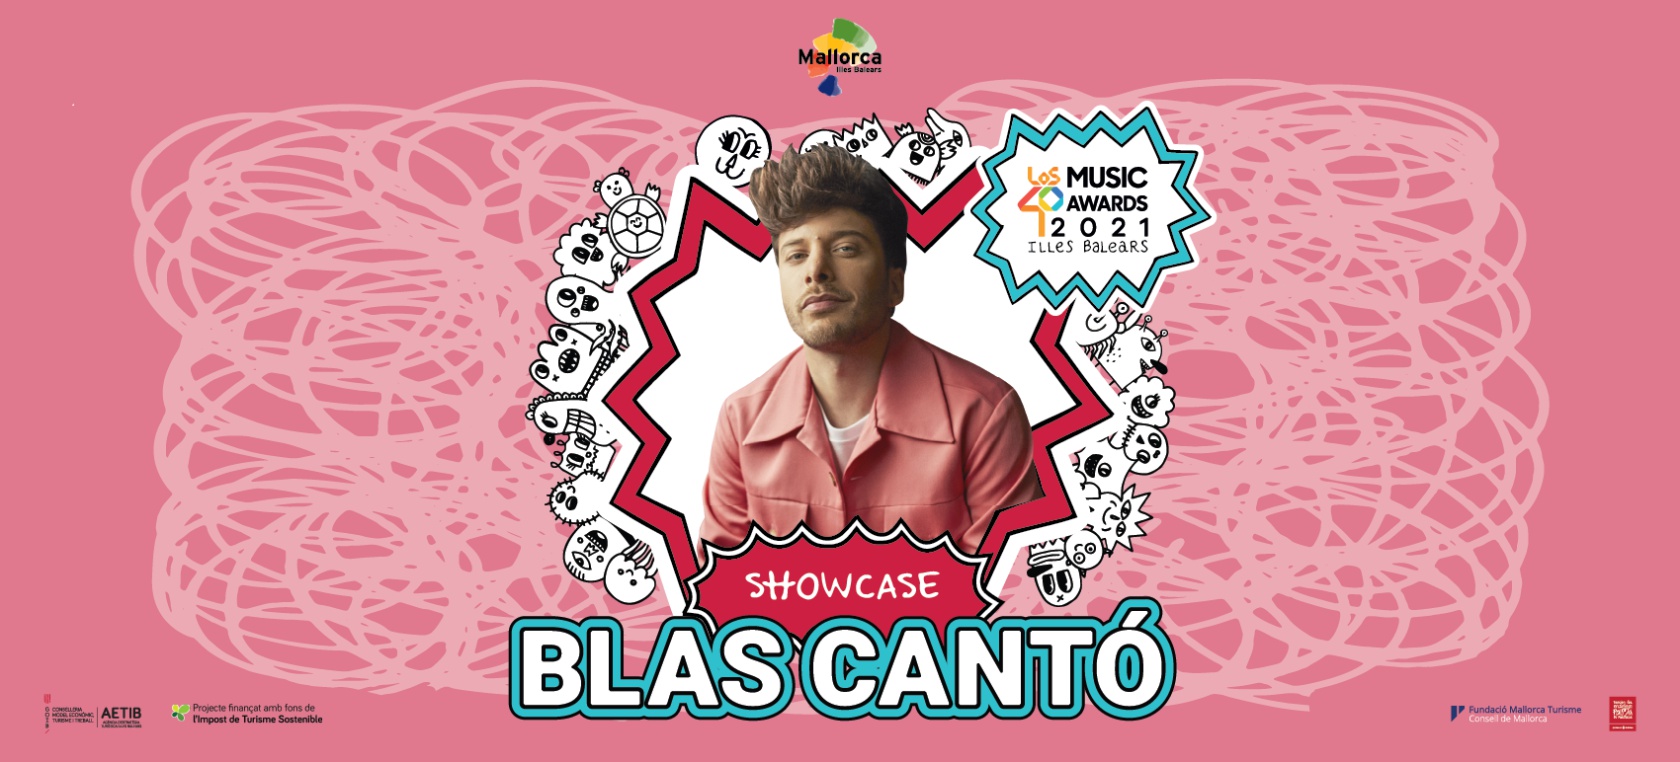 Gana tu invitación para el showcase de Blas Cantó con LOS40 en un precioso rincón de Palma de Mallorca